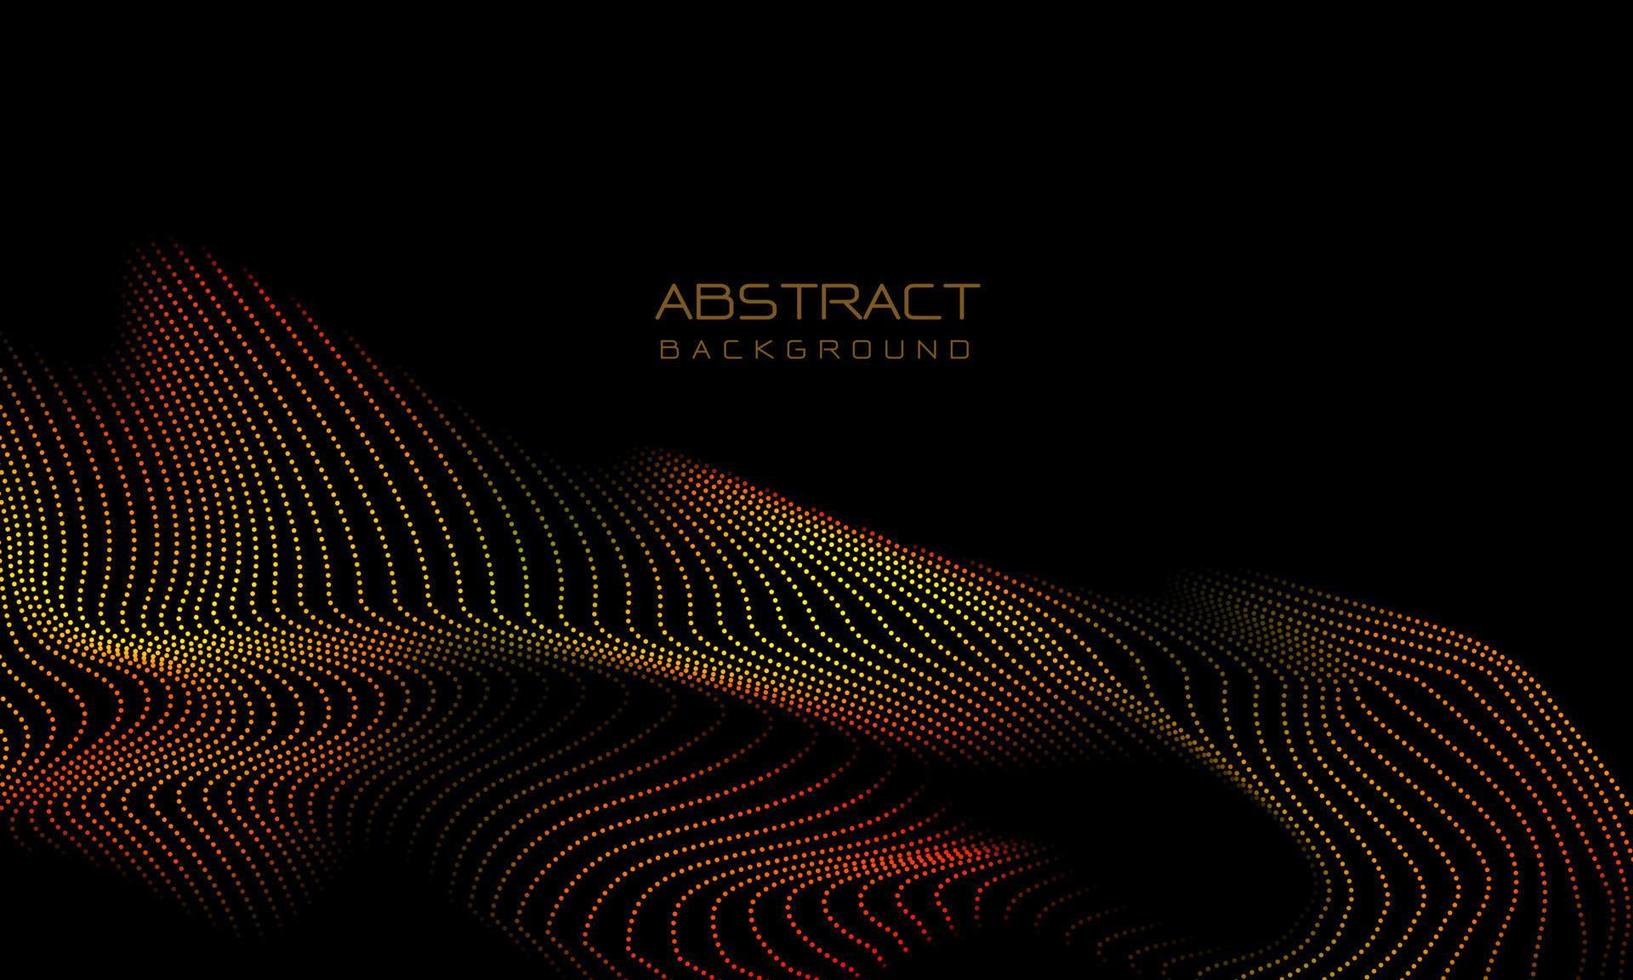 abstracte 3d hete rode gele stippen golf kromme beweging licht op zwart met lege ruimte ontwerp moderne futuristische technologie achtergrond vector